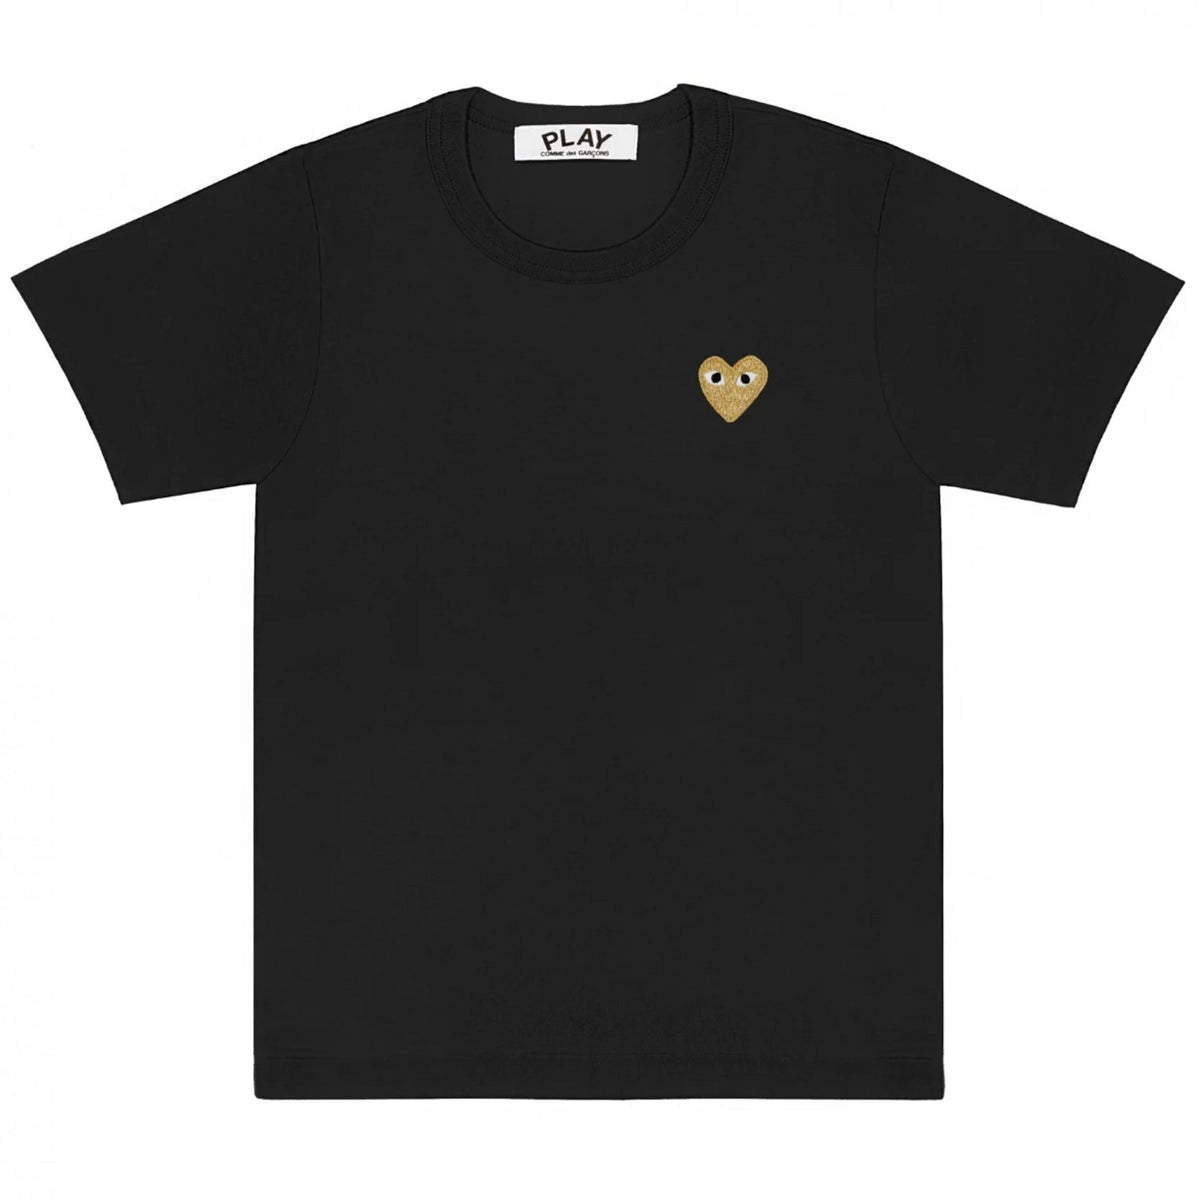 PLAY T-Shirt Herren gold Herz schwarz